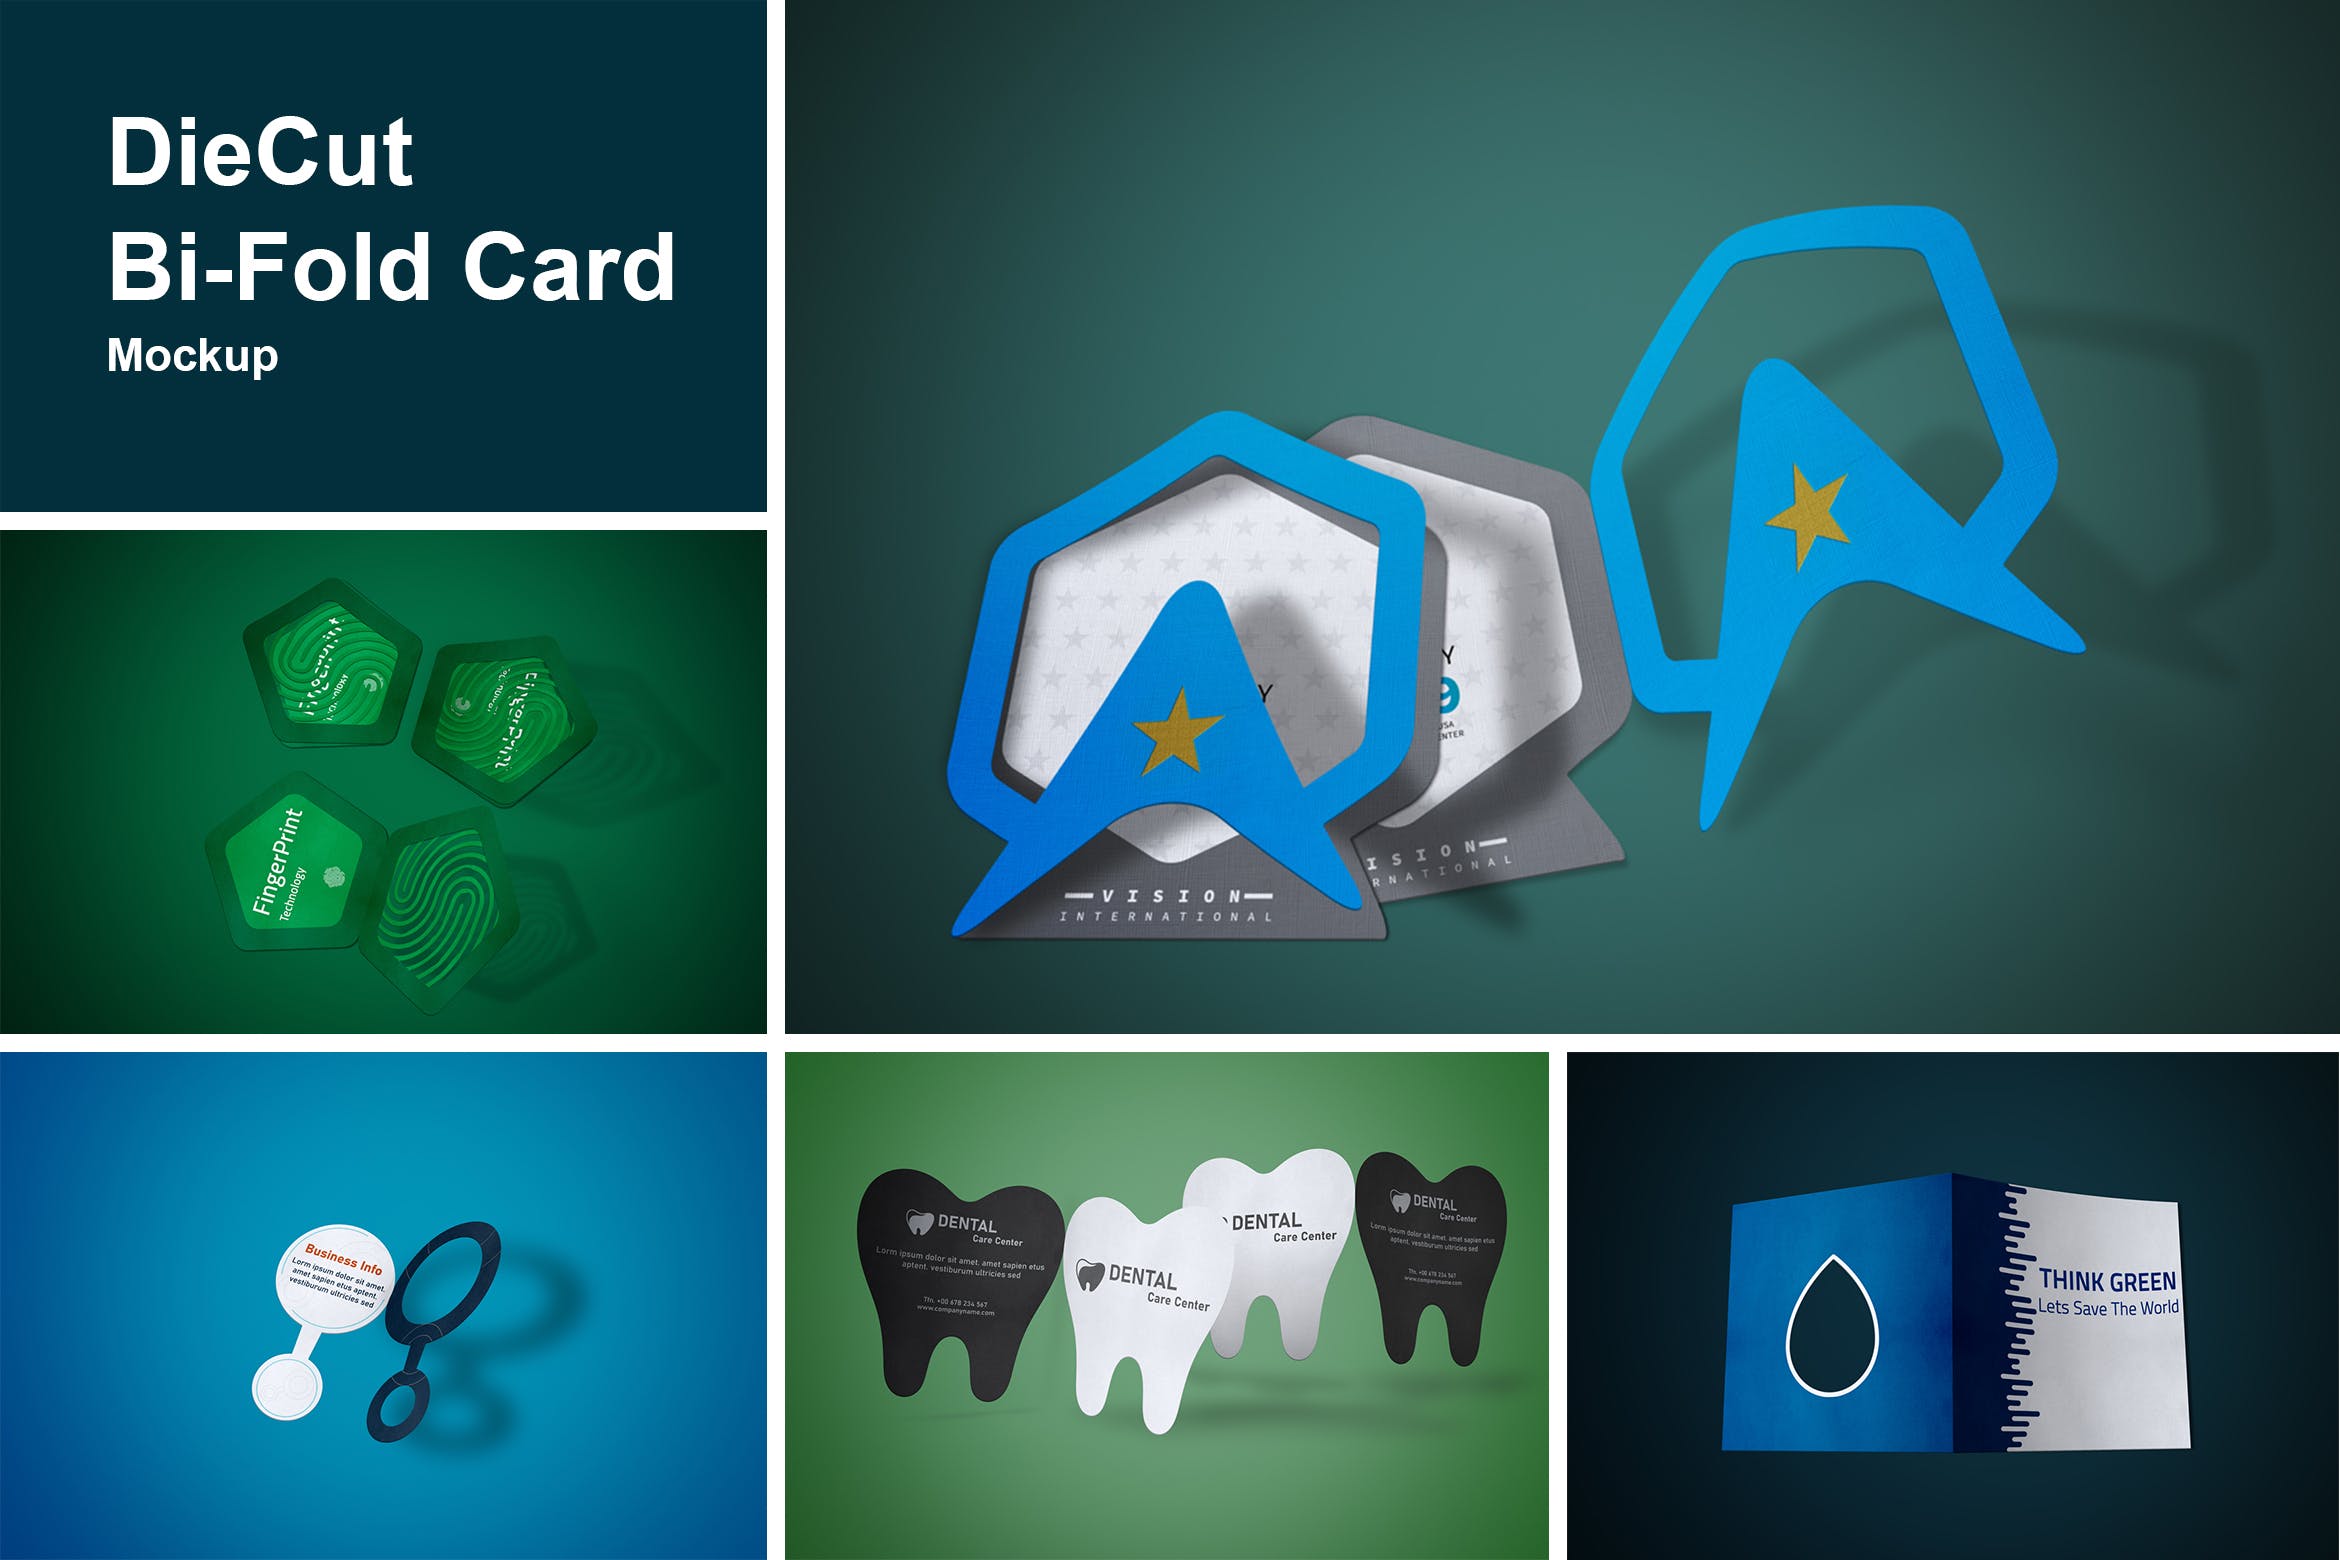 DieCut裁切工艺折叠卡片设计图第一素材精选 DieCut Bi-Fold Card Mockup插图